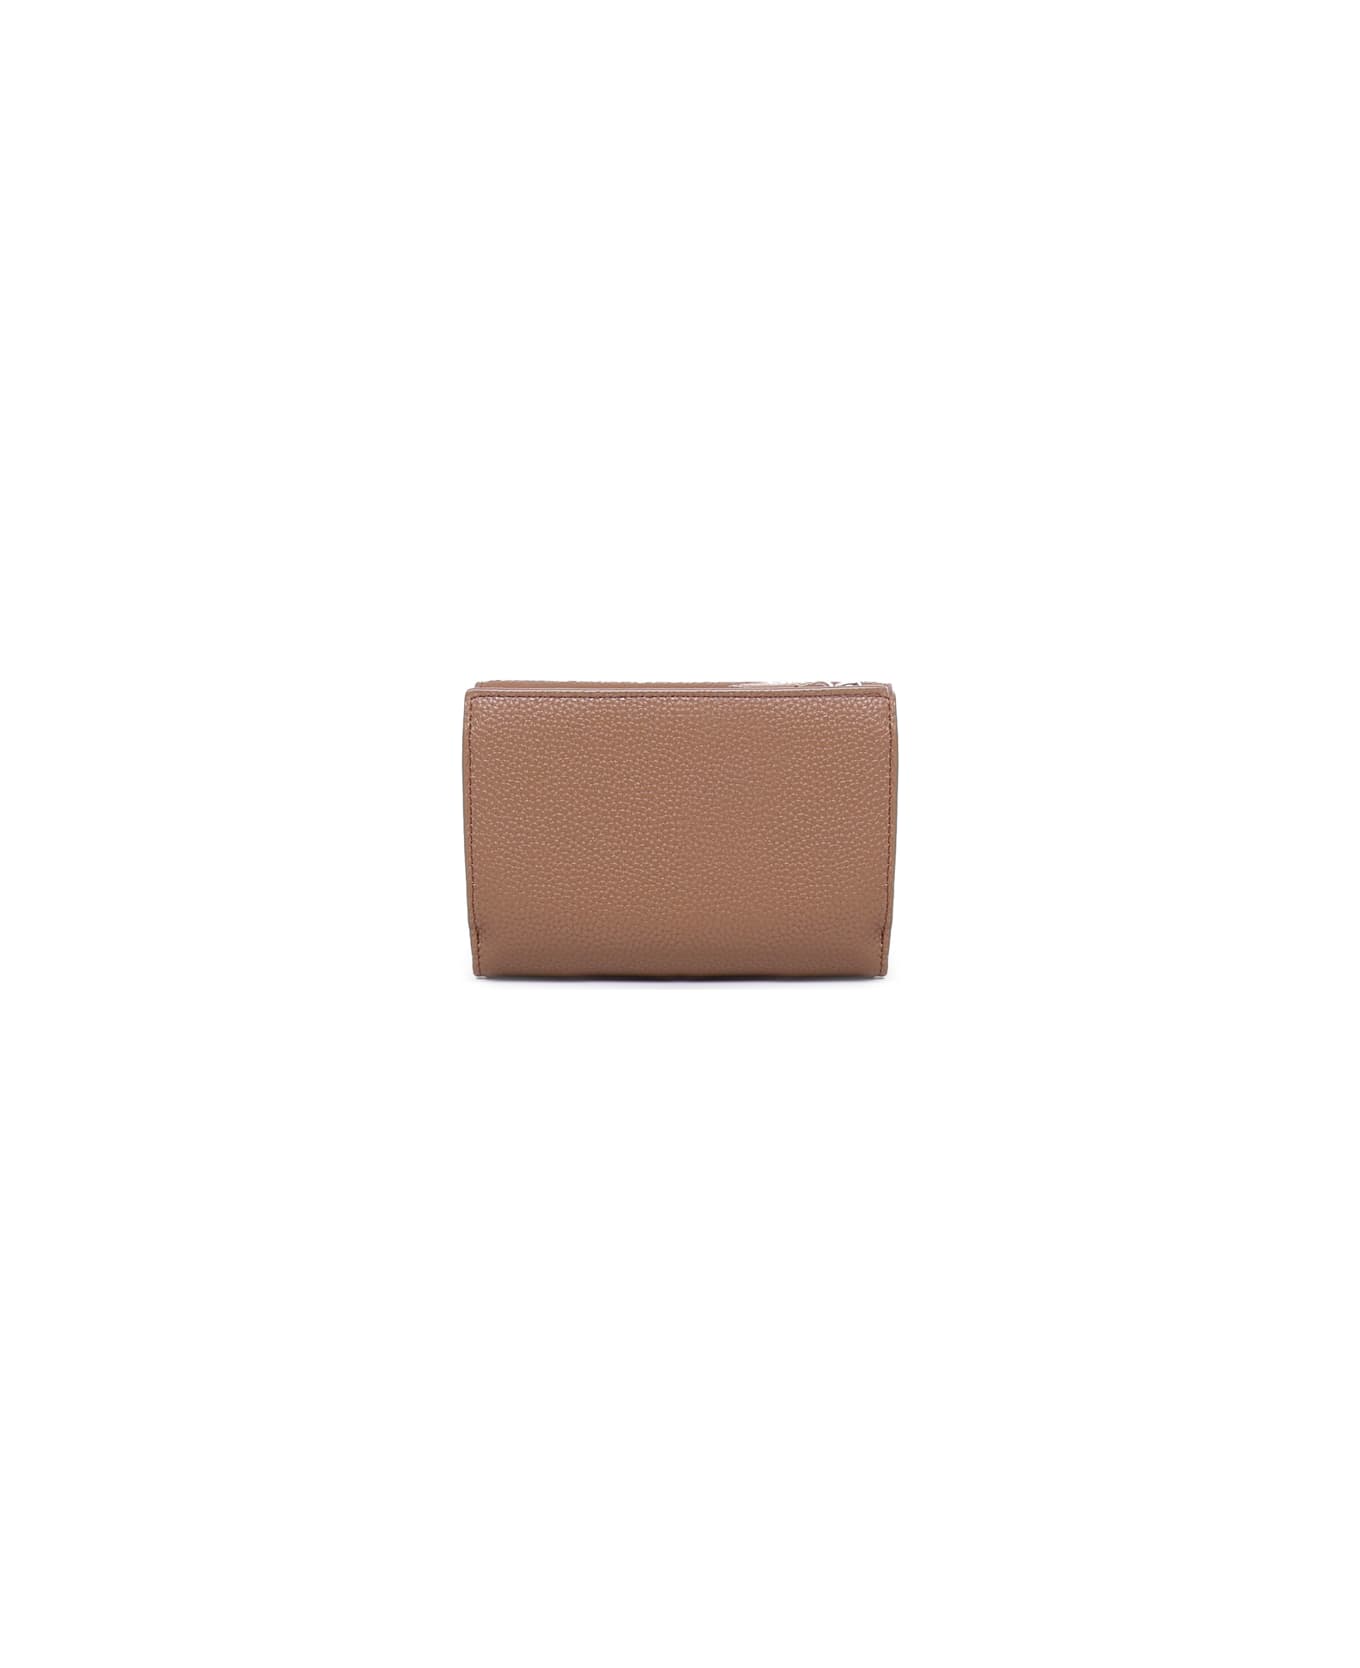 Giorgio Armani Wallet With Card Compartment And Magnetic Closure Giorgio Armani - BLACK